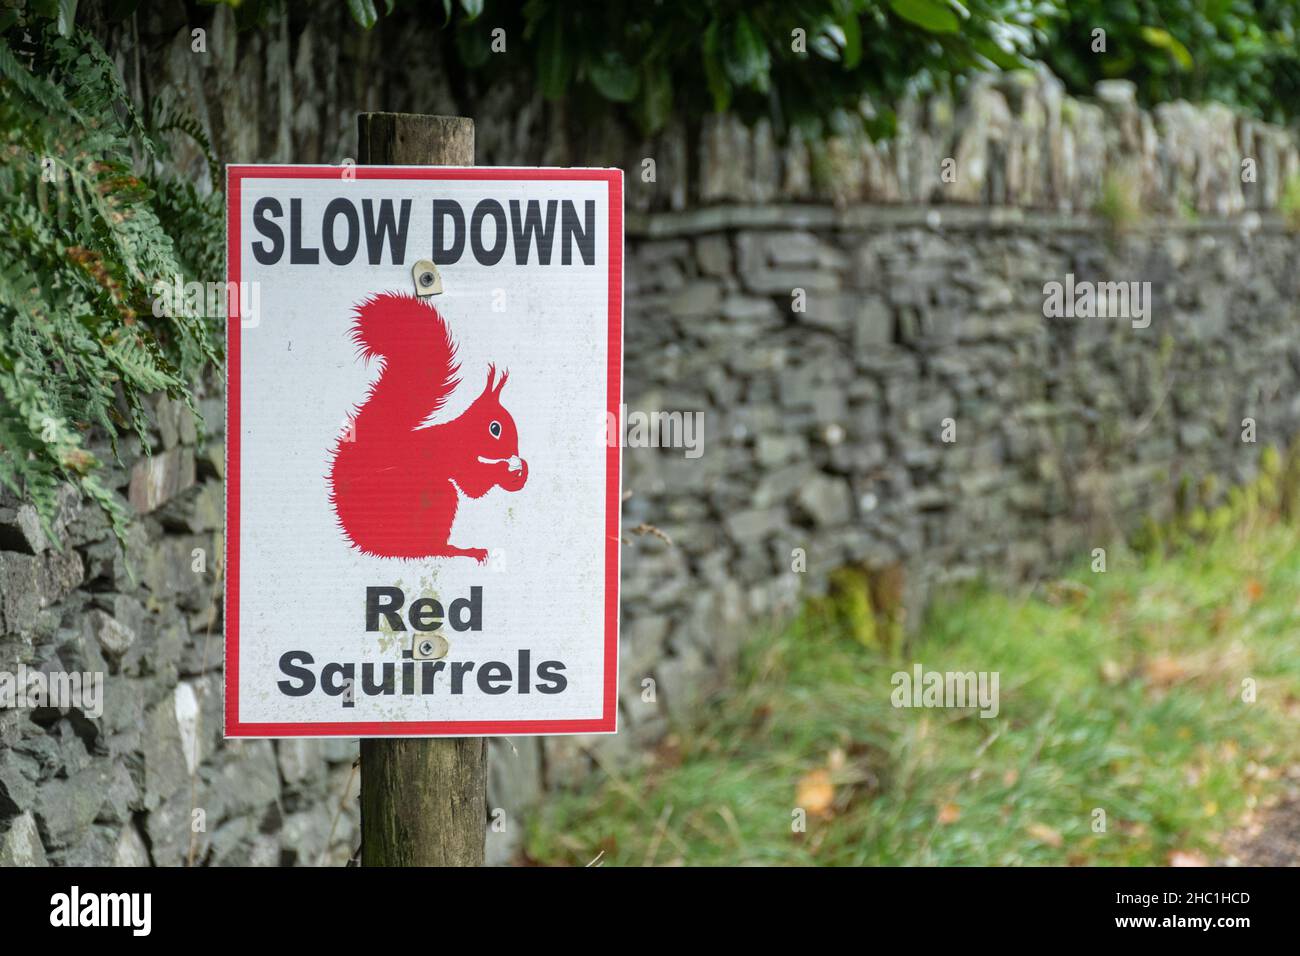 Ralentissez, écureuils rouges, panneau d'avertissement de la faune sur la route dans le parc national de Lake District, Cumbria, Angleterre, Royaume-Uni Banque D'Images